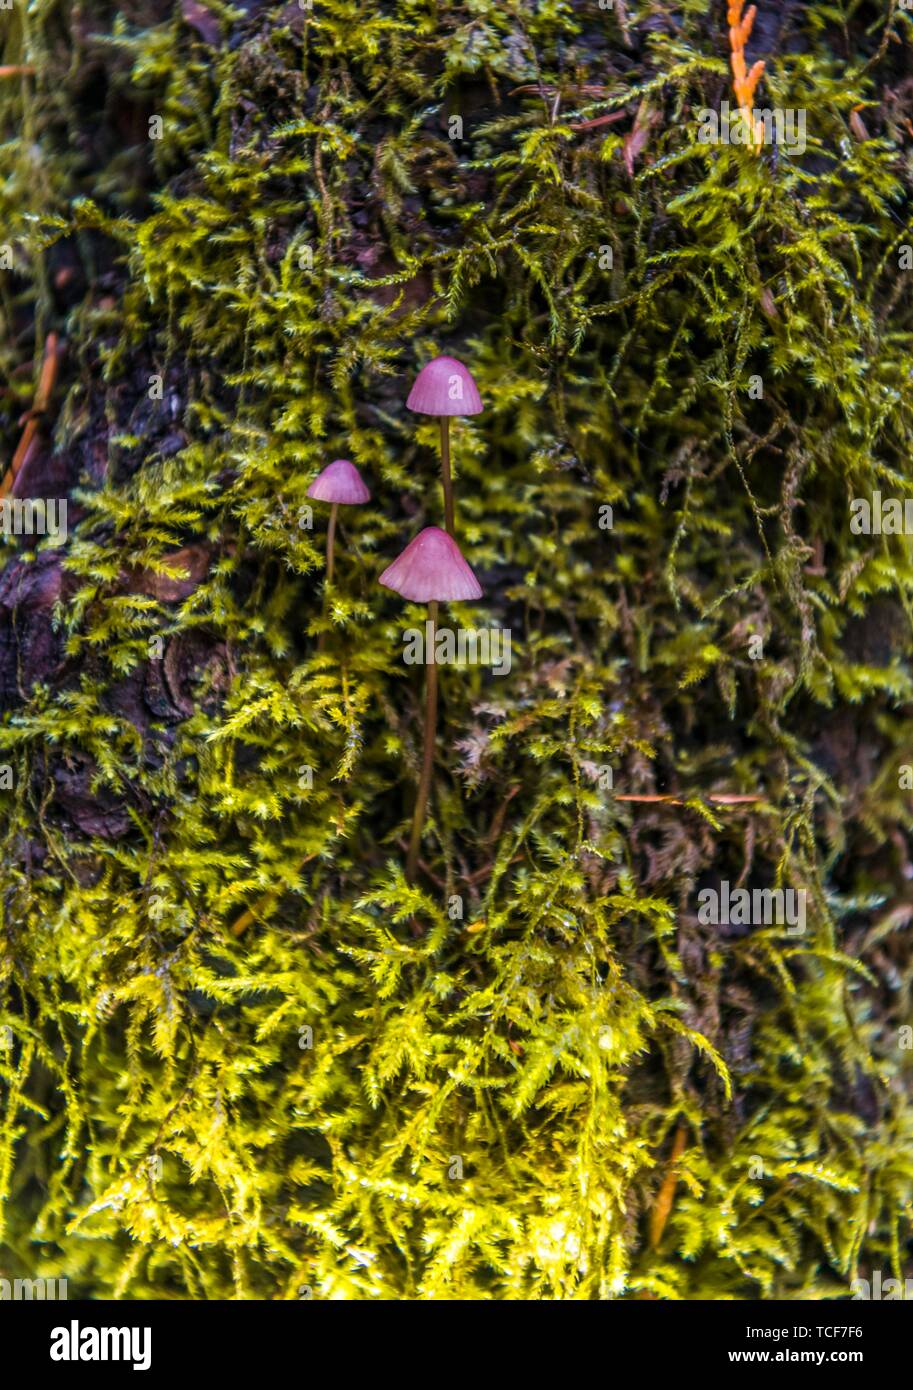 Petits Bonnets violet (Mycena) poussent sur mossed tronc d'arbre, forêt tropicale, Mt. Baker-Snoqualmie National Forest, North Carolina, USA, Amérique du Nord Banque D'Images